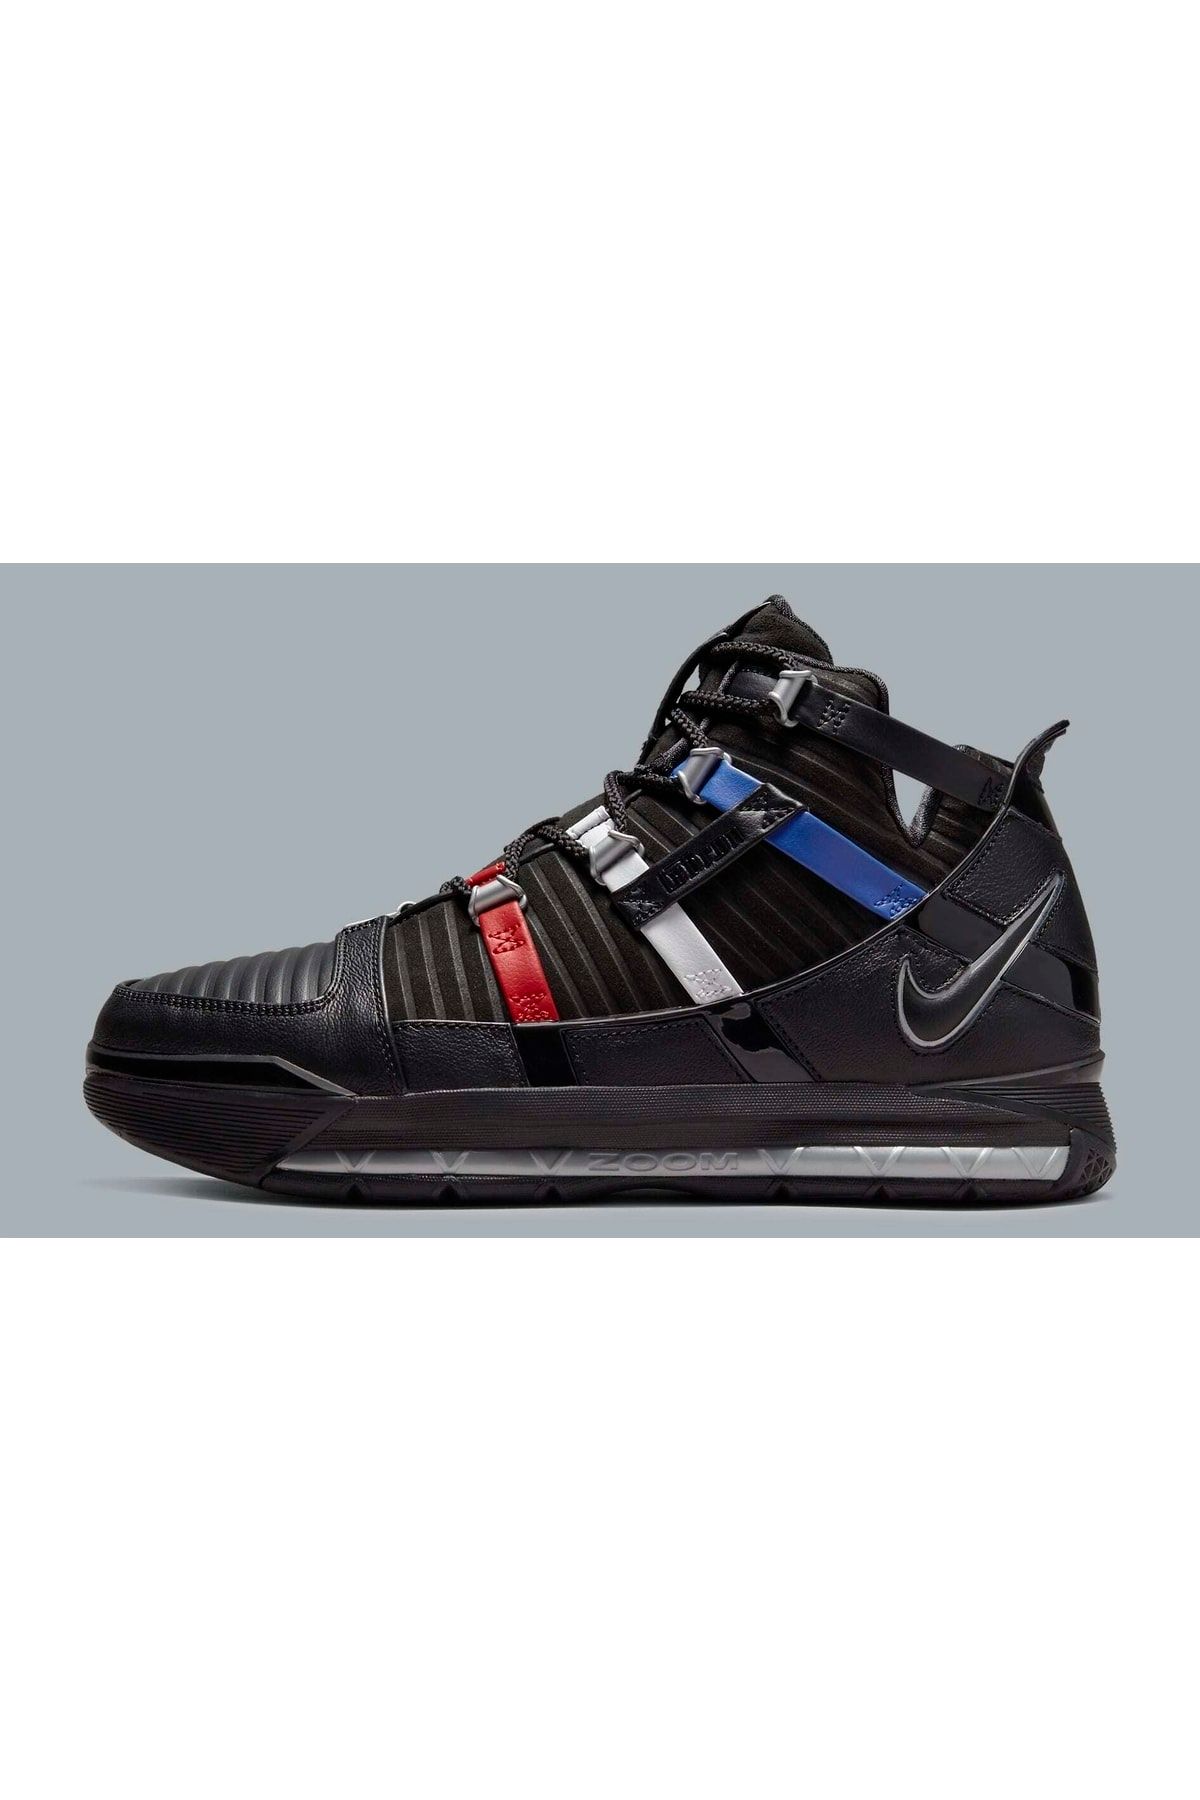 Nike Lebron 3 Retro Black Erkek Basketbol Ayakkabı Do9354-001